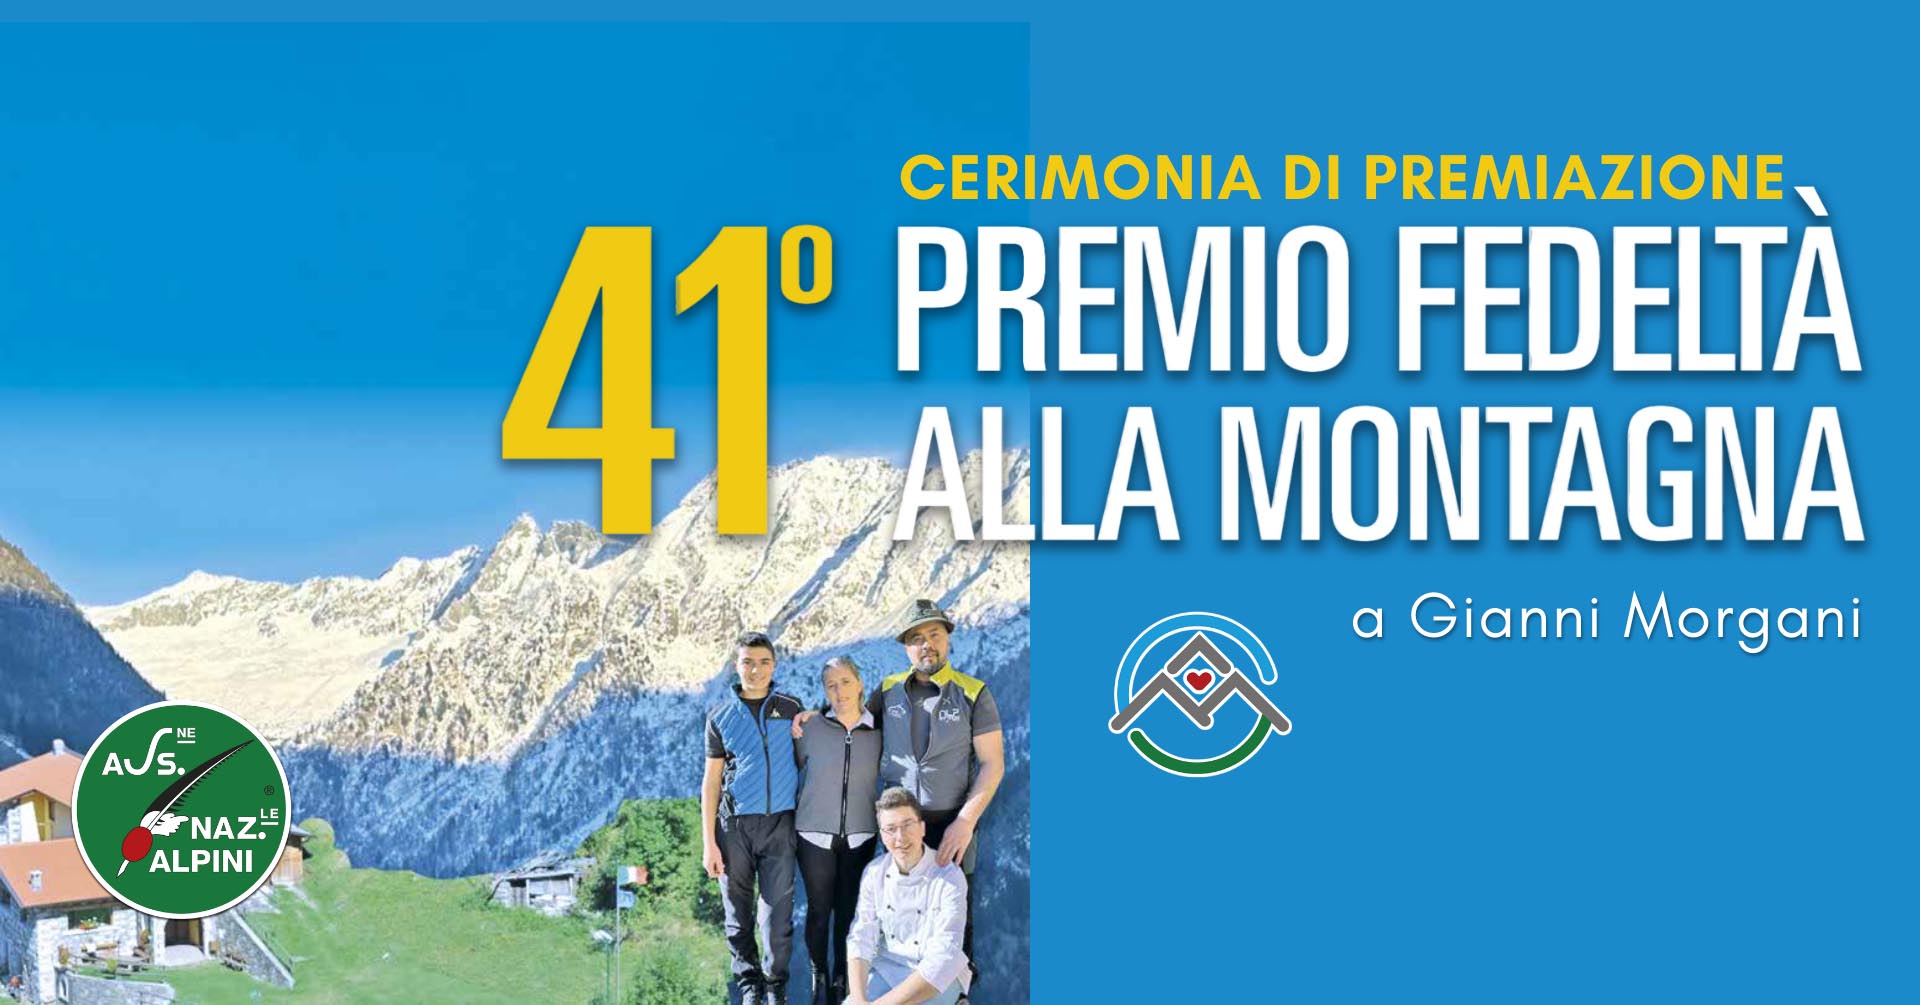 41° Premio fedeltà alla montagna | La premiazione